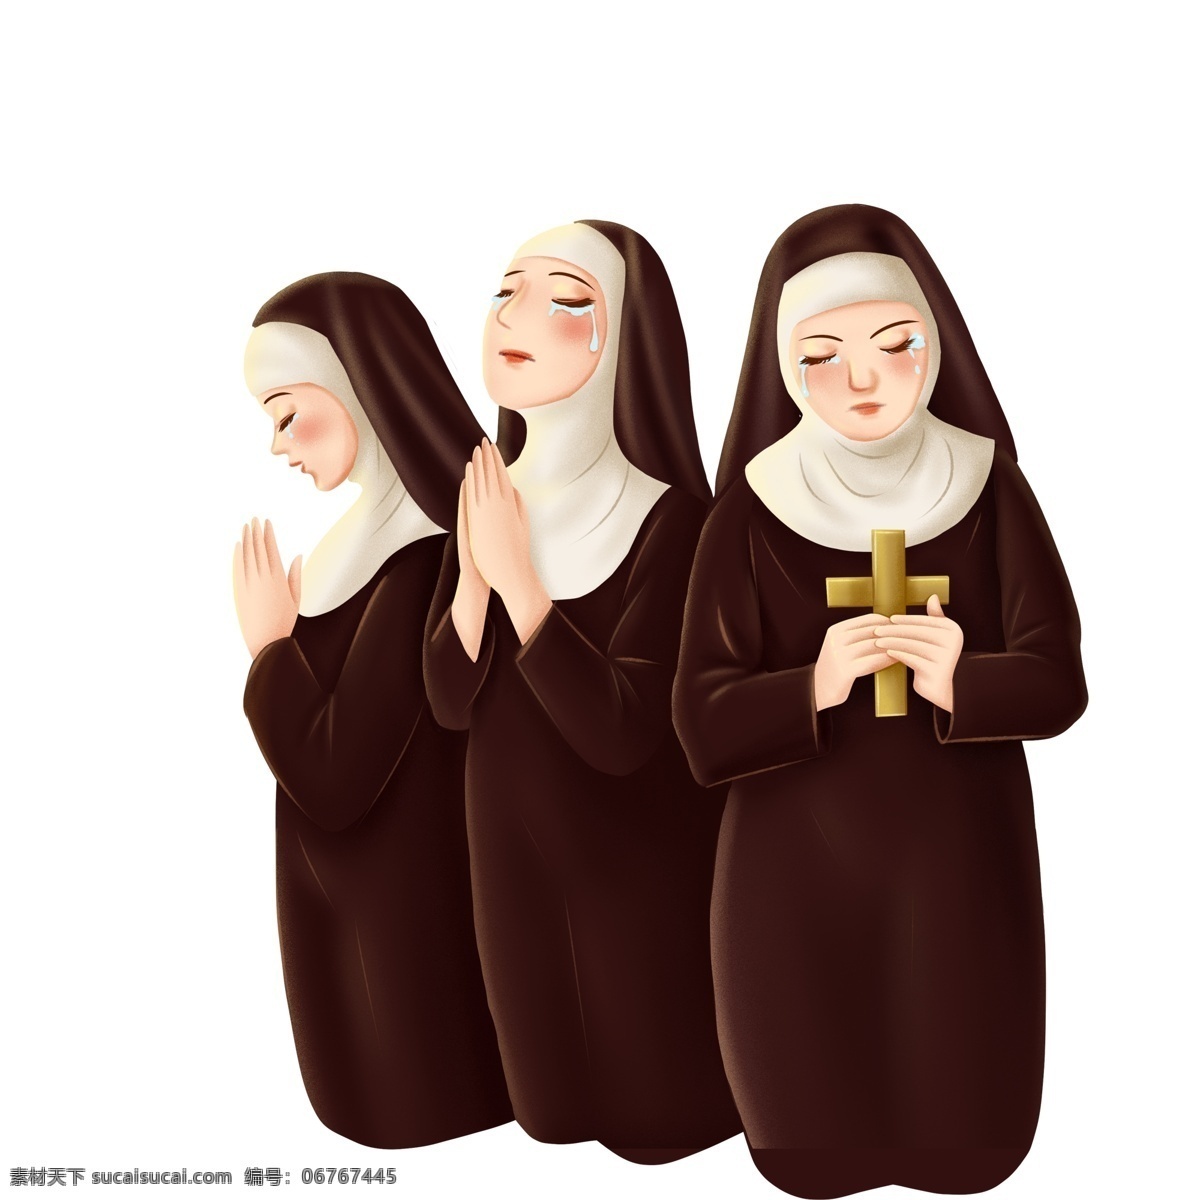 手绘 祈祷 哭泣 修女 插画 女孩 人物 圣母